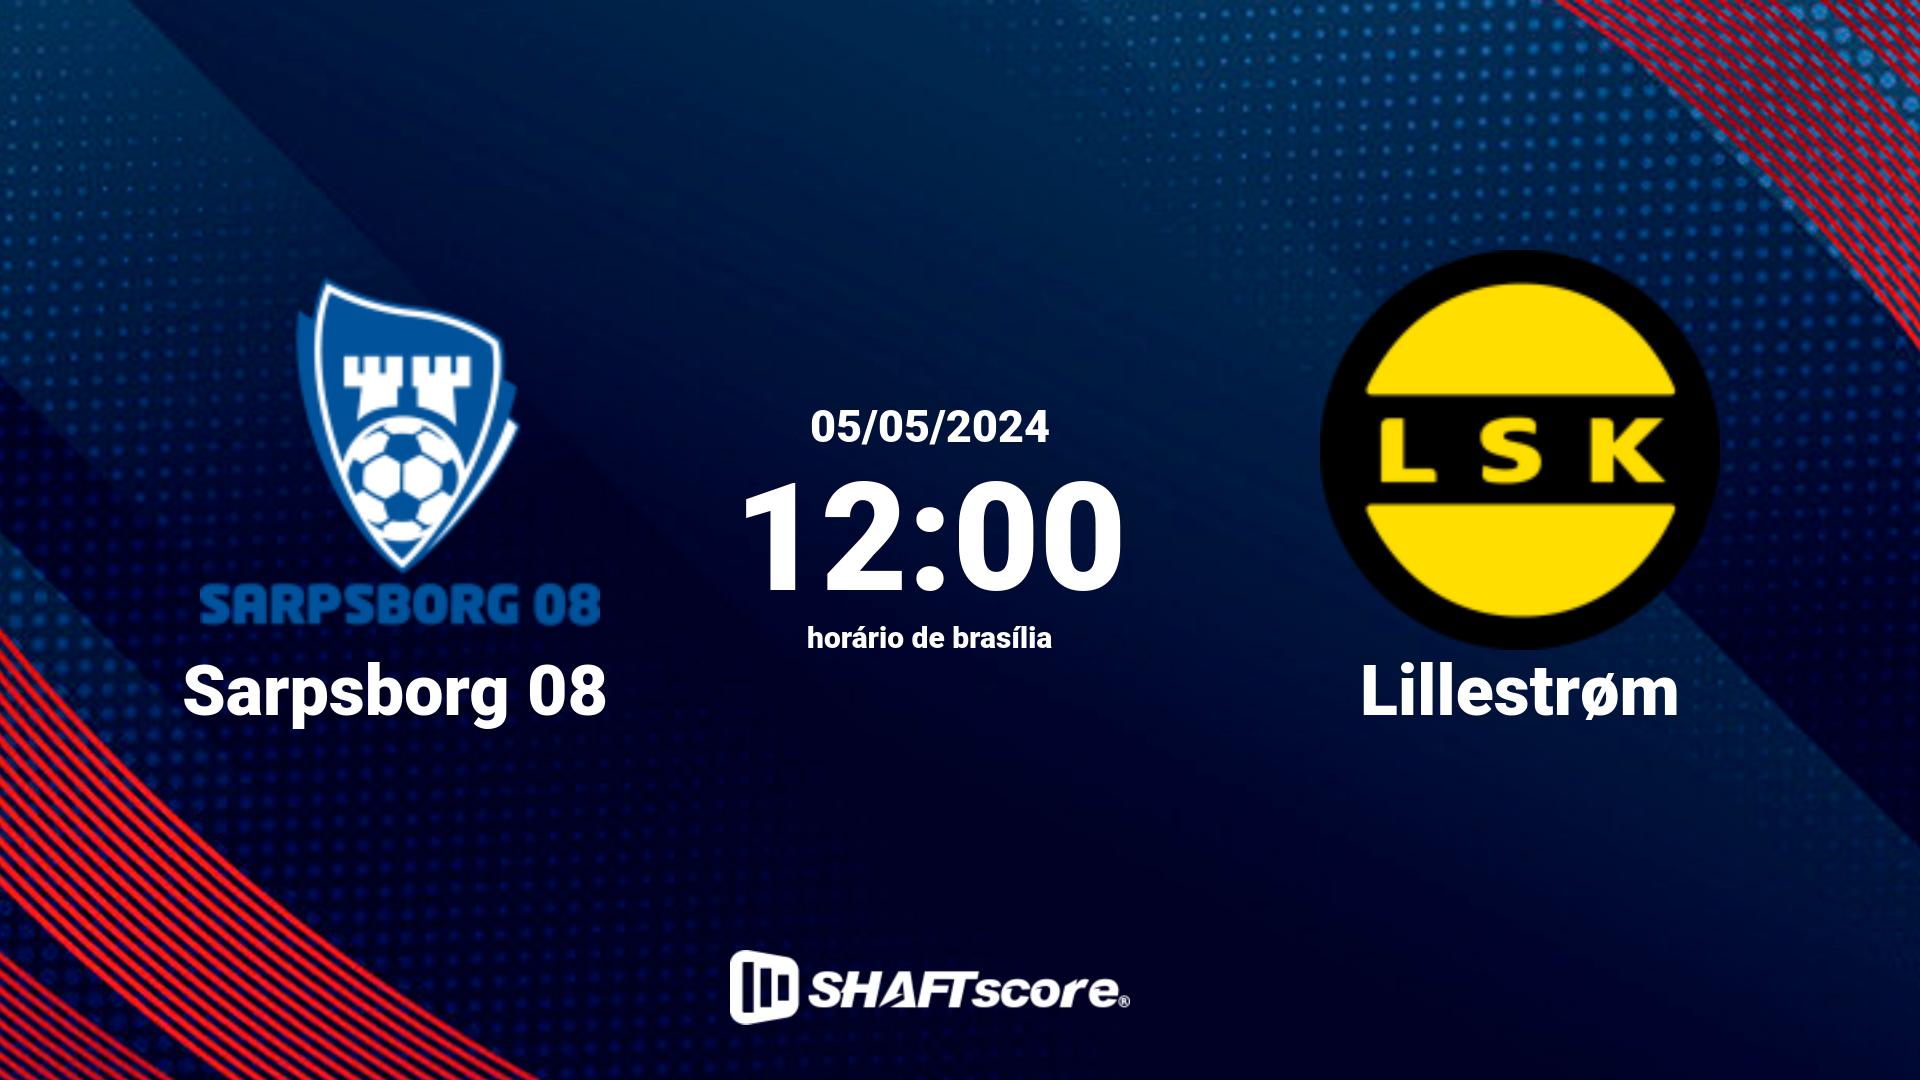 Estatísticas do jogo Sarpsborg 08 vs Lillestrøm 05.05 12:00